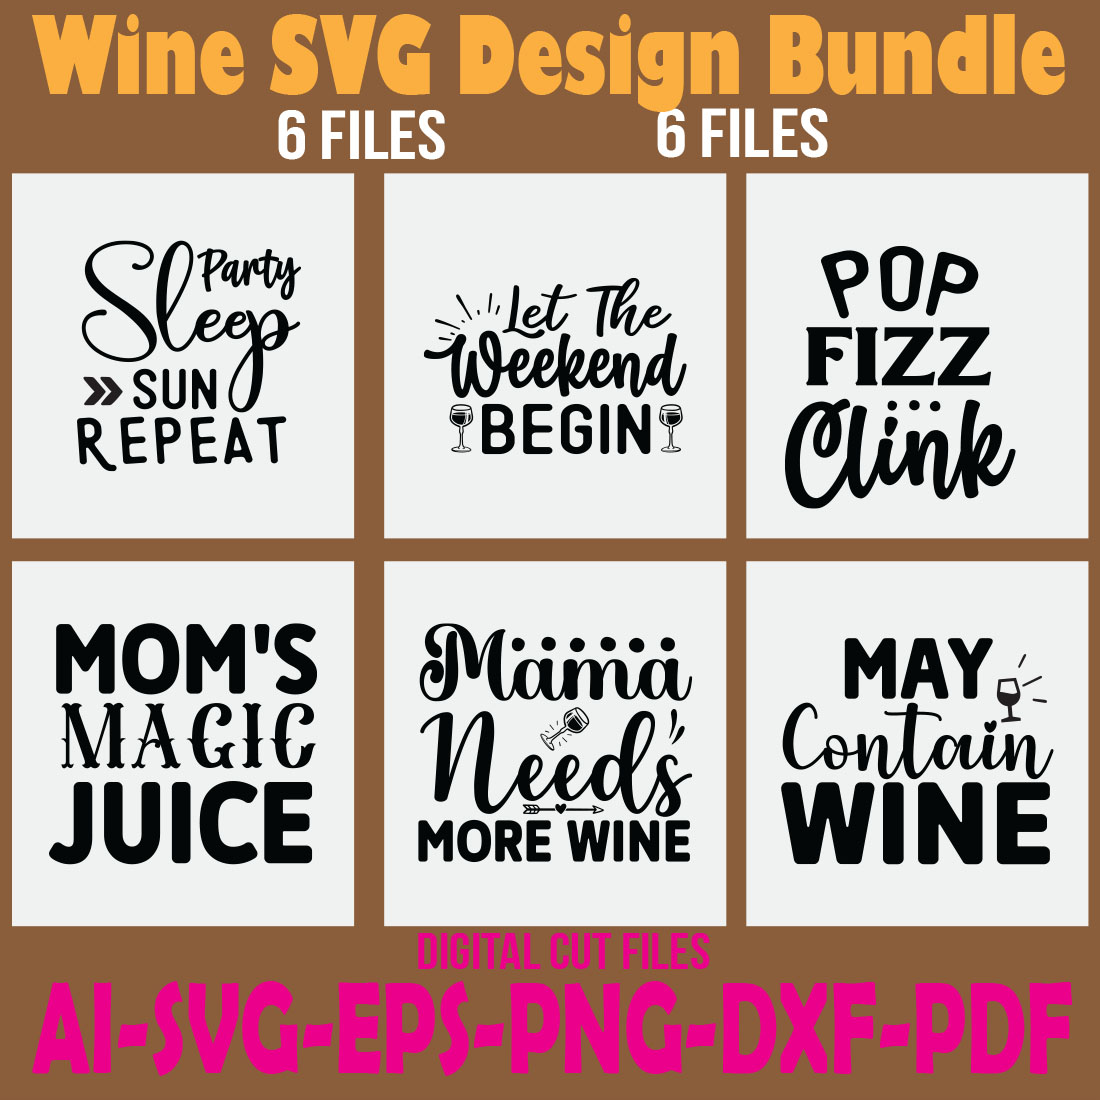 Wine SVG Design Bundle cover image.